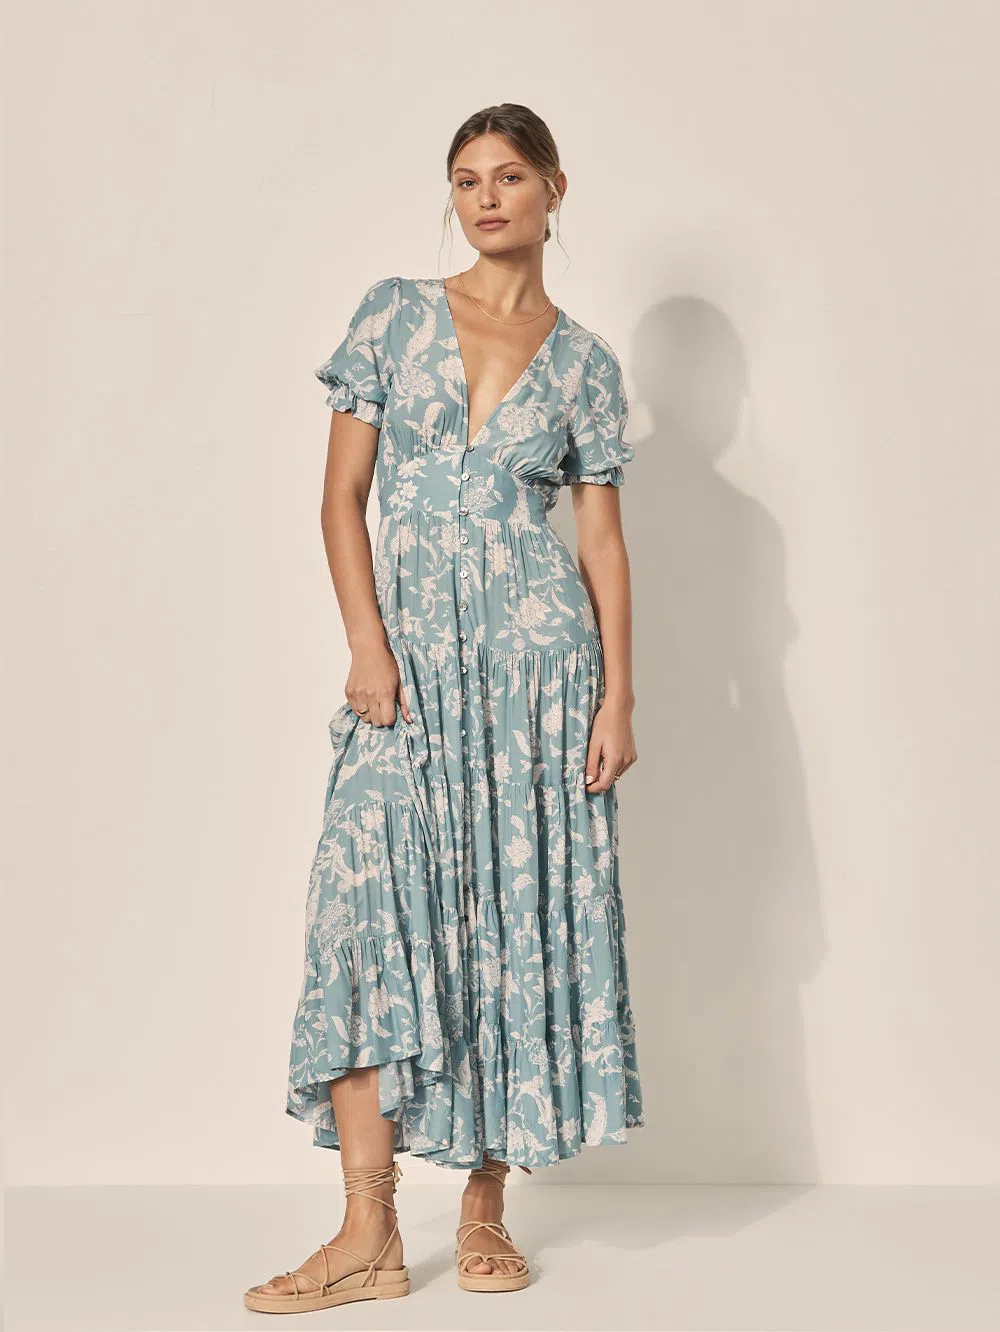 Kivari Mavi Maxi Dress Floral Size 8 | The Volte